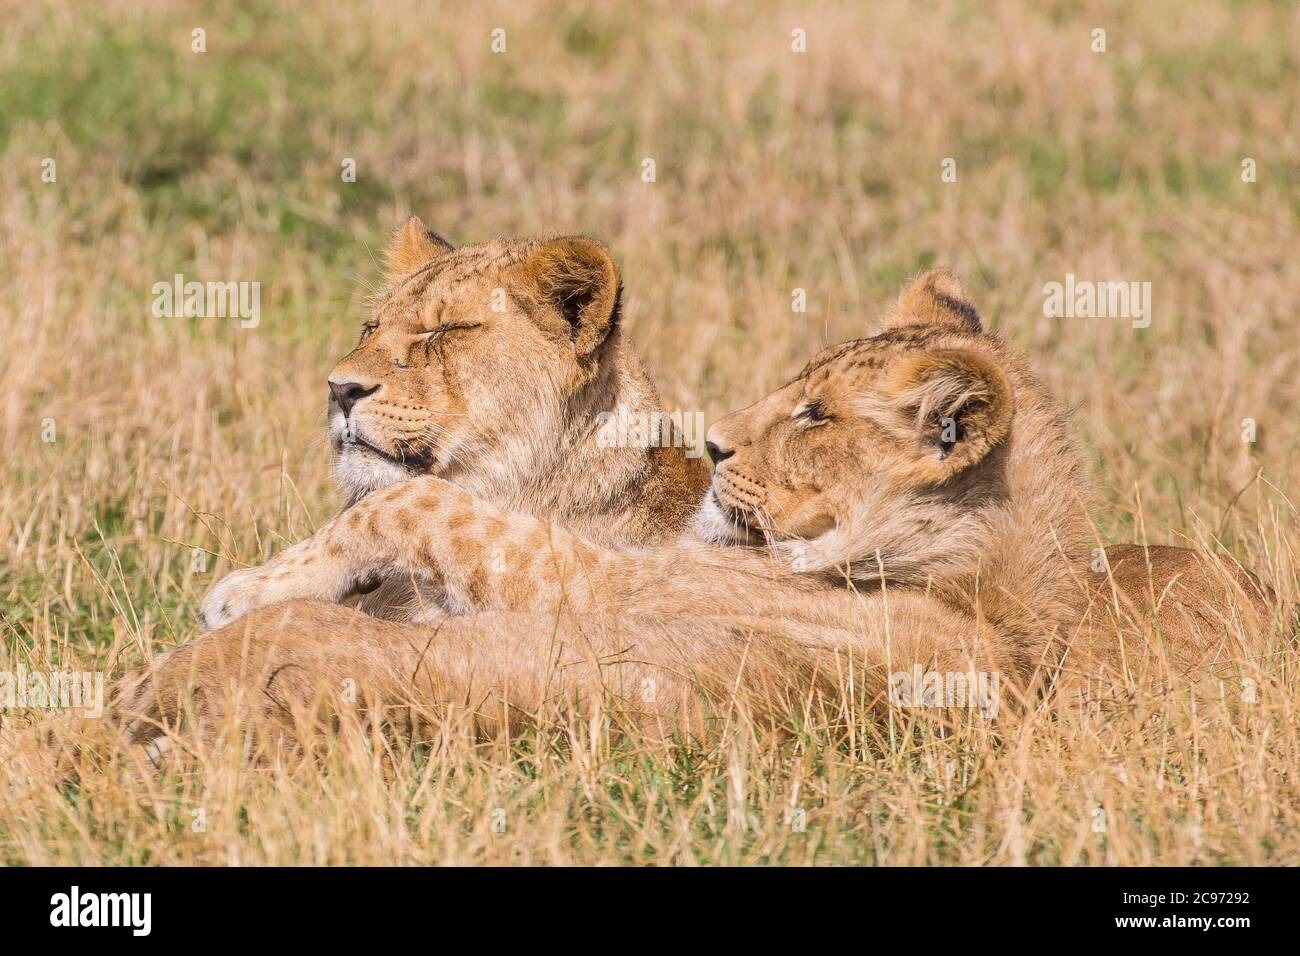 Primo piano di due cuccioli di leone africani (Panthera leo) che giacciono isolati insieme rilassandosi nell'erba estiva, West Midland Safari Park, Regno Unito. Foto Stock